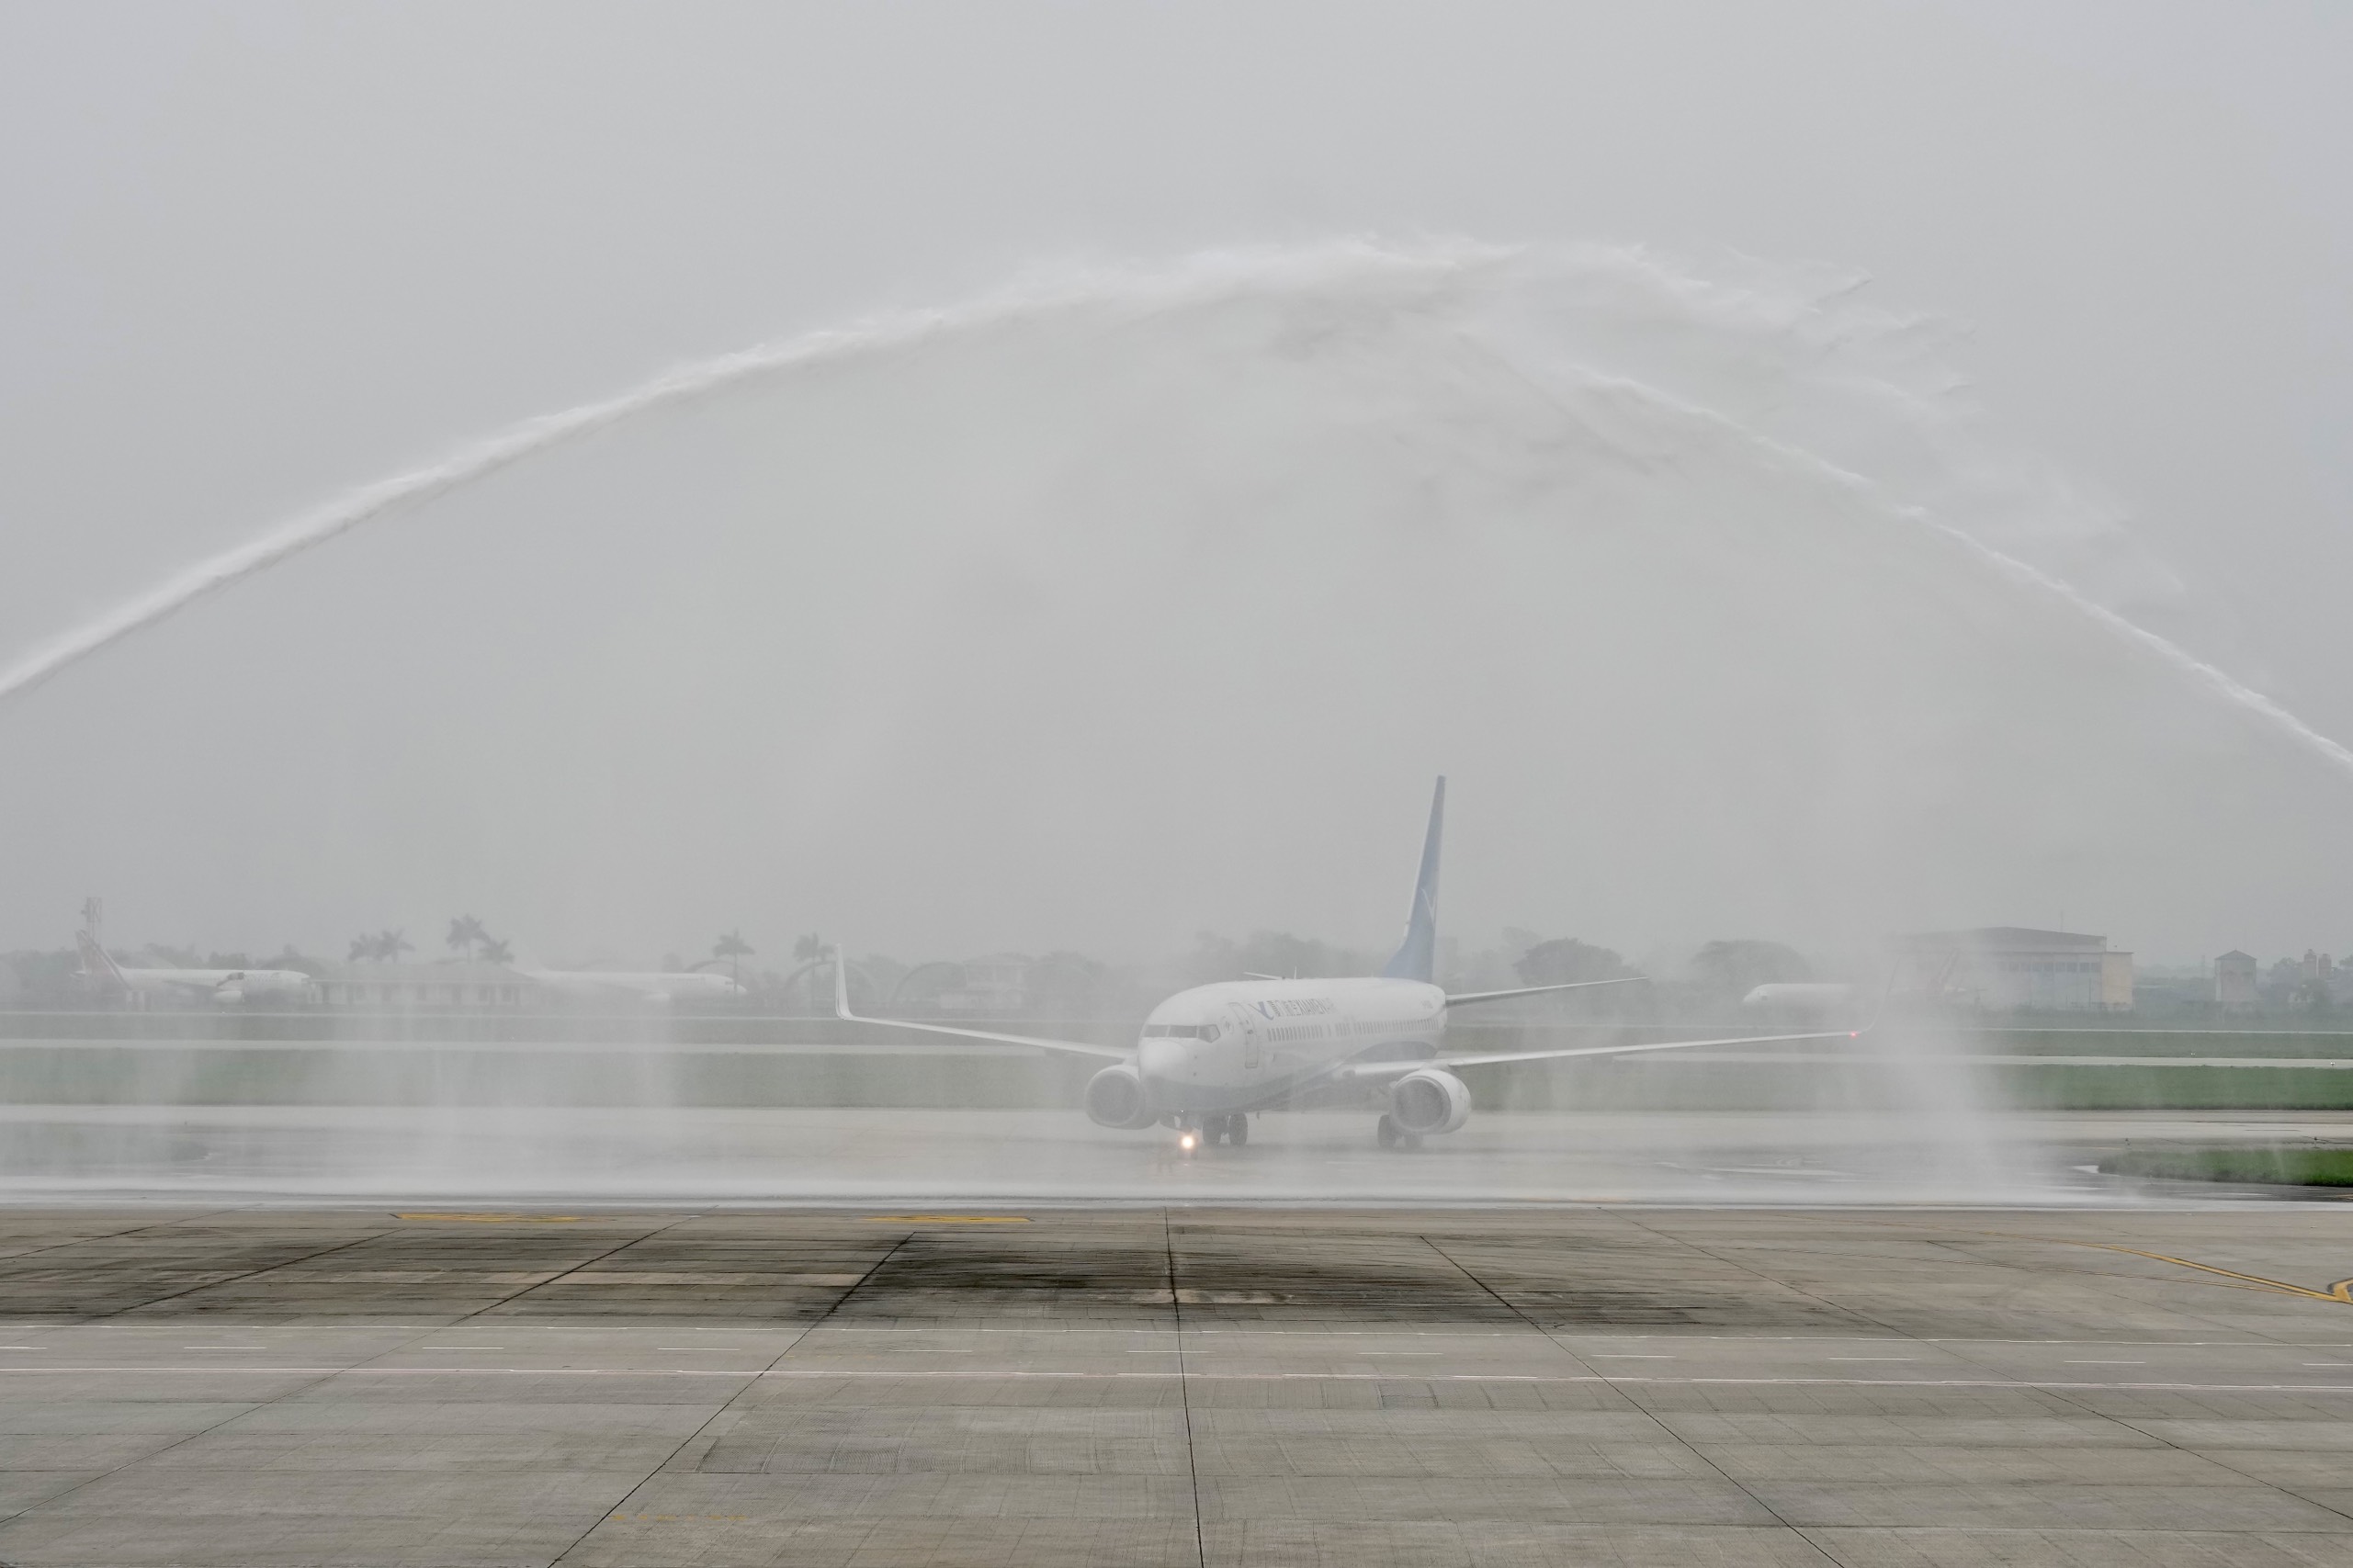 Cảng hàng không quốc tế Nội Bài thực hiện nghi thức “phun vòi rồng” - một nghi thức trang trọng của ngành hàng không khai trương đường bay mới của Xiamen Airlines.